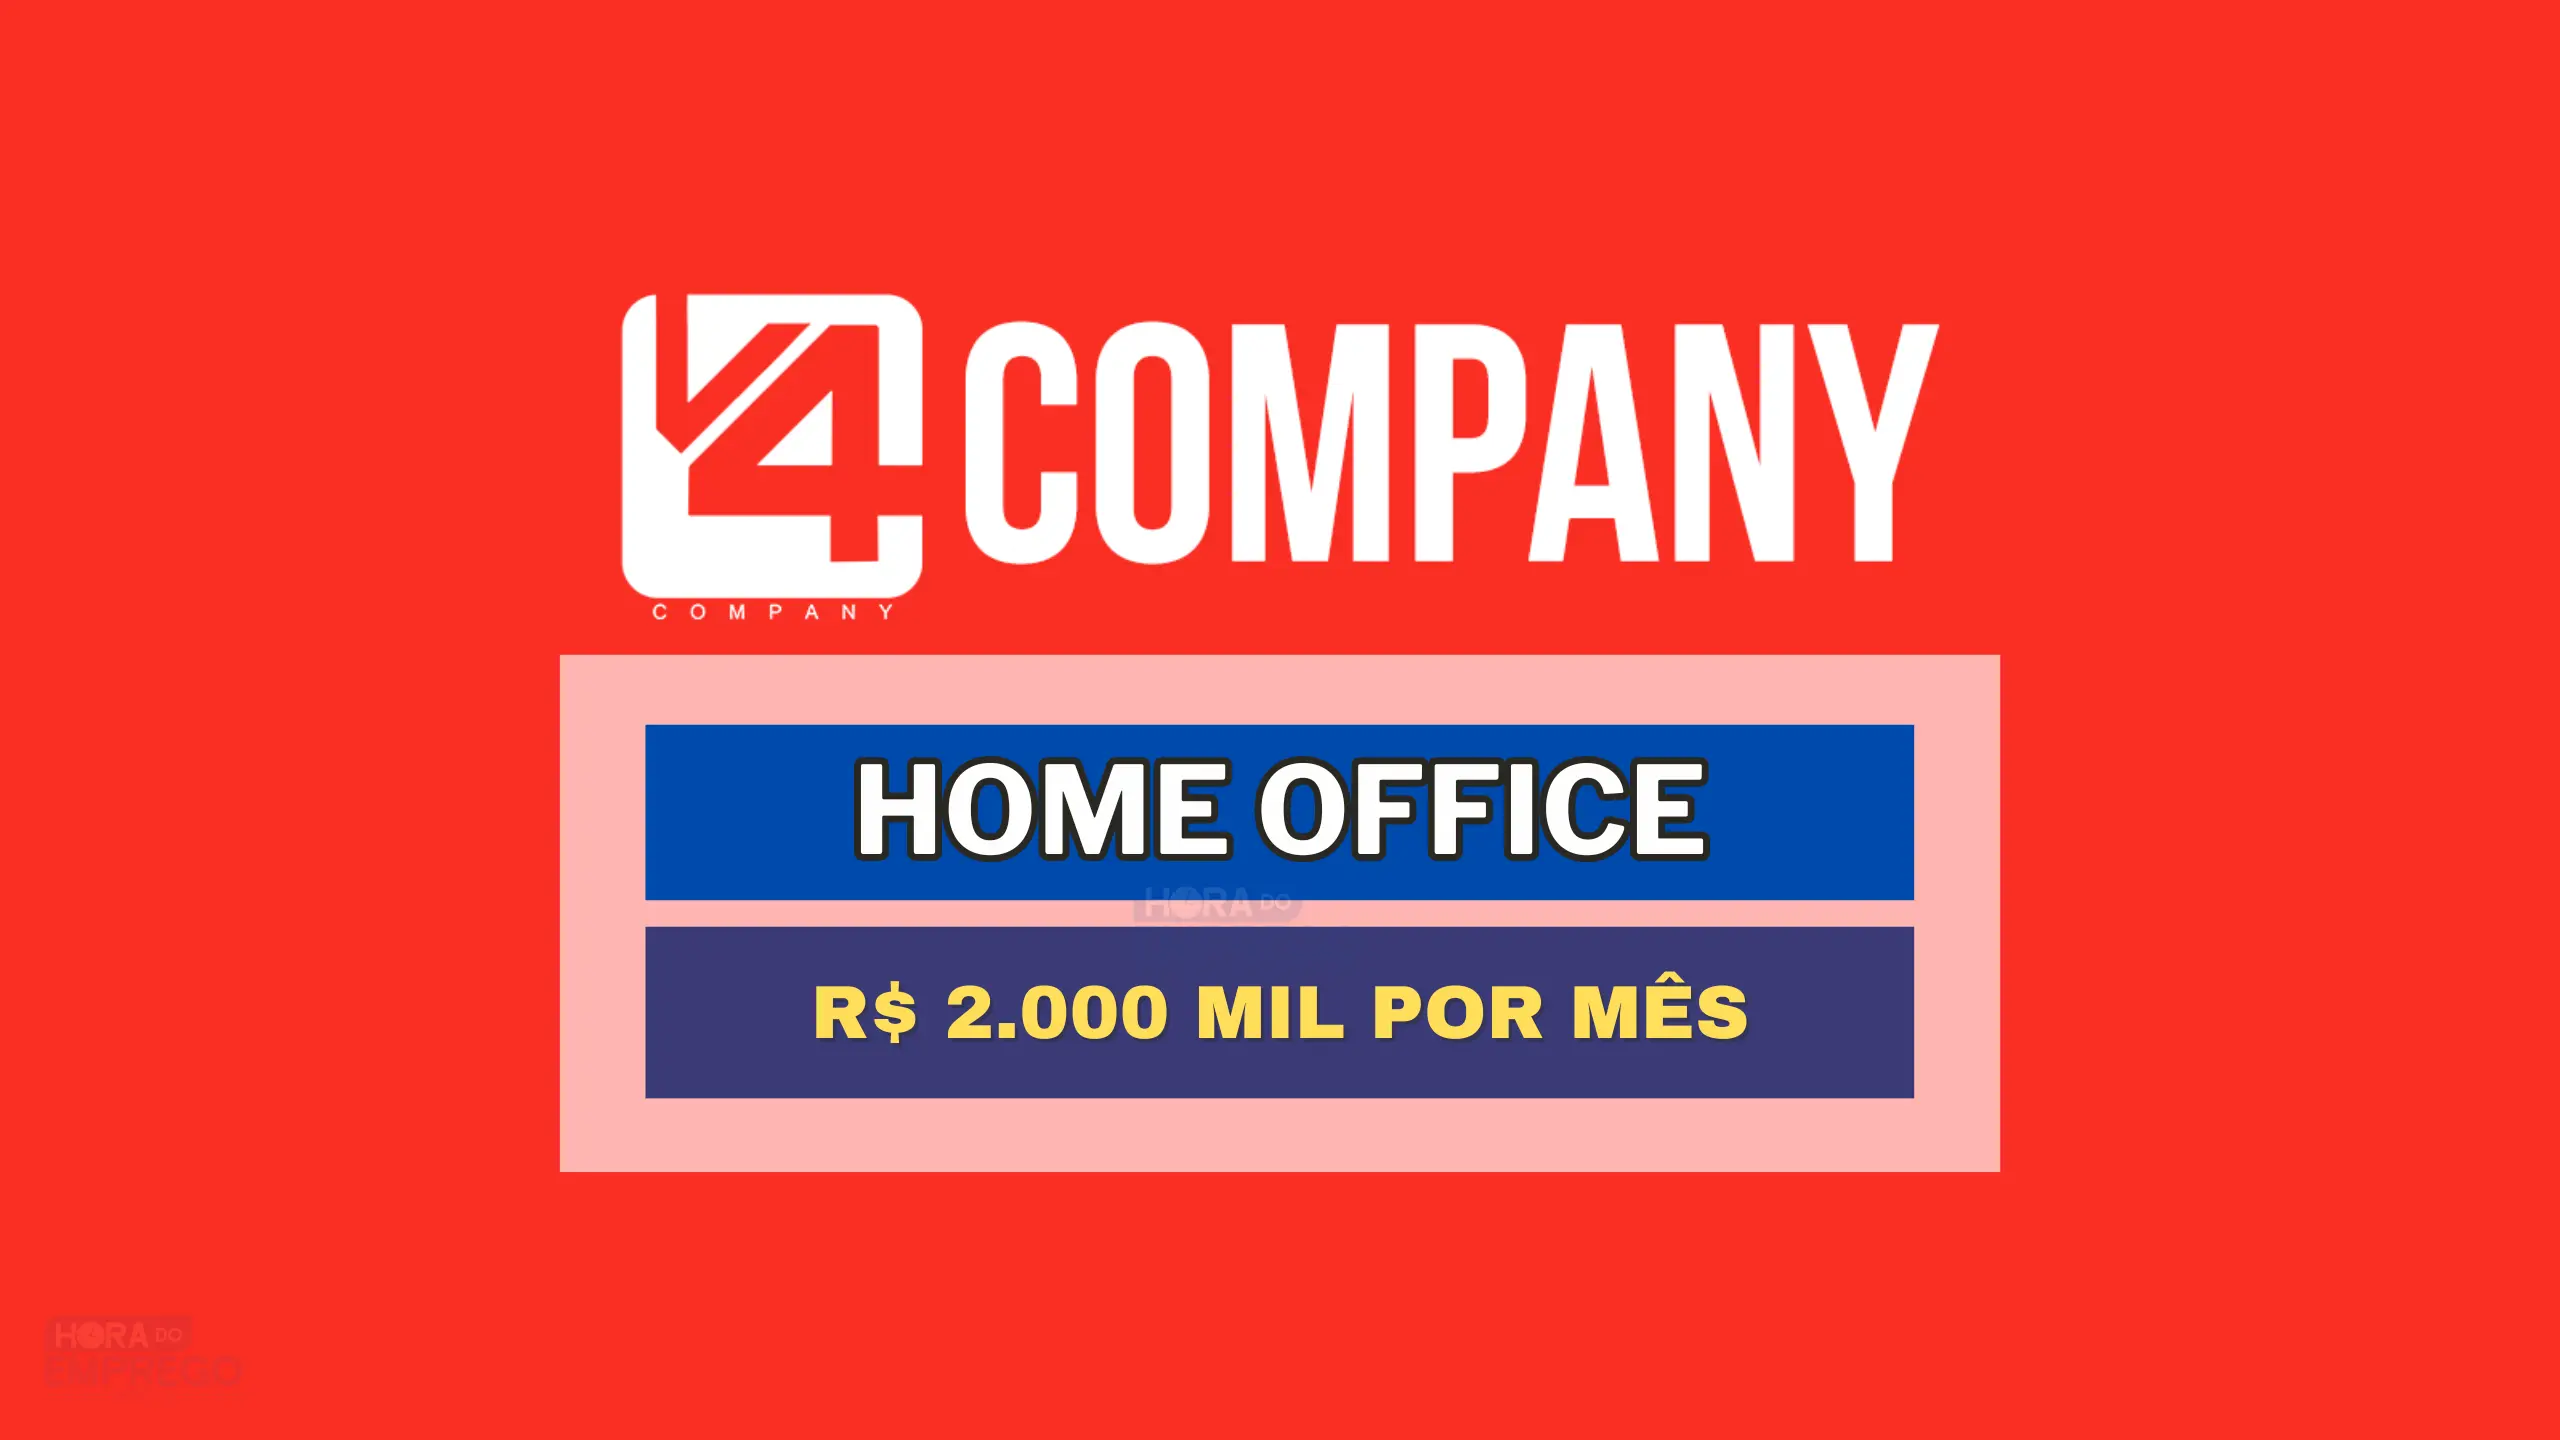 V4 Company abre vaga HOME OFFICE para Assistente Administrativo com salário de R$ 1.800,00 por mês